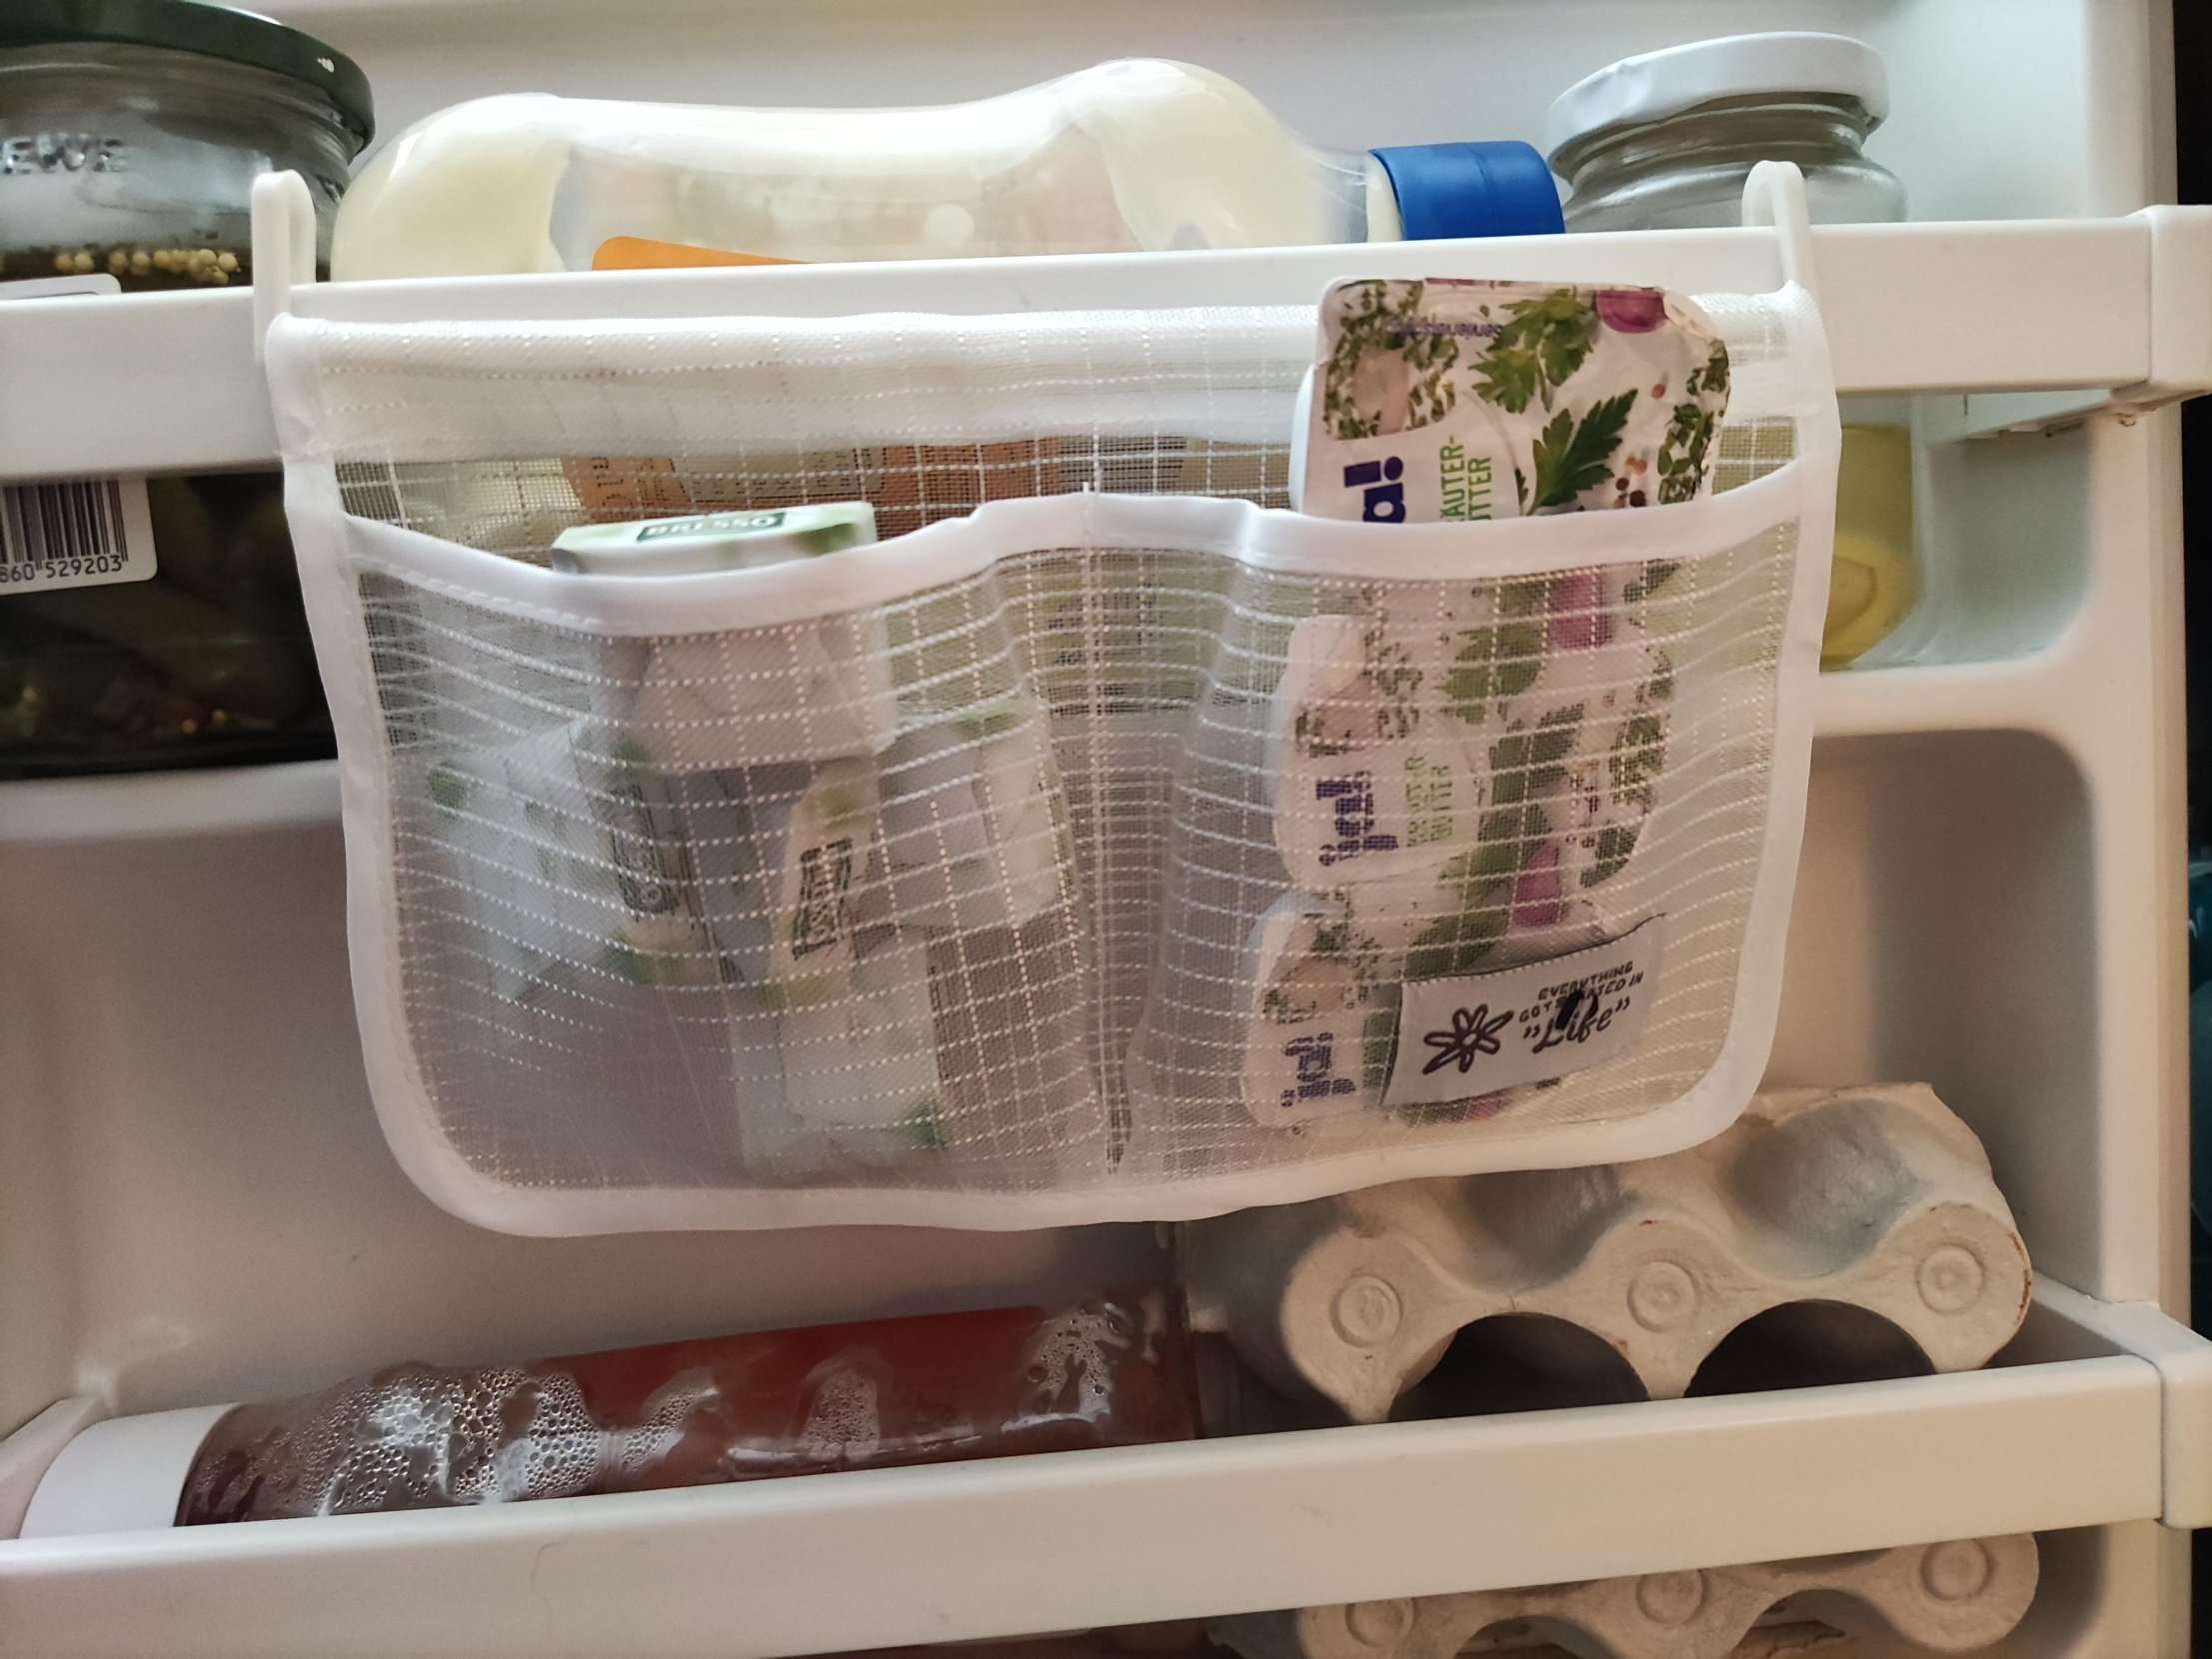 Kühlschrank-Taschen: Ordnung für deinen Kleinkram! #cleantok